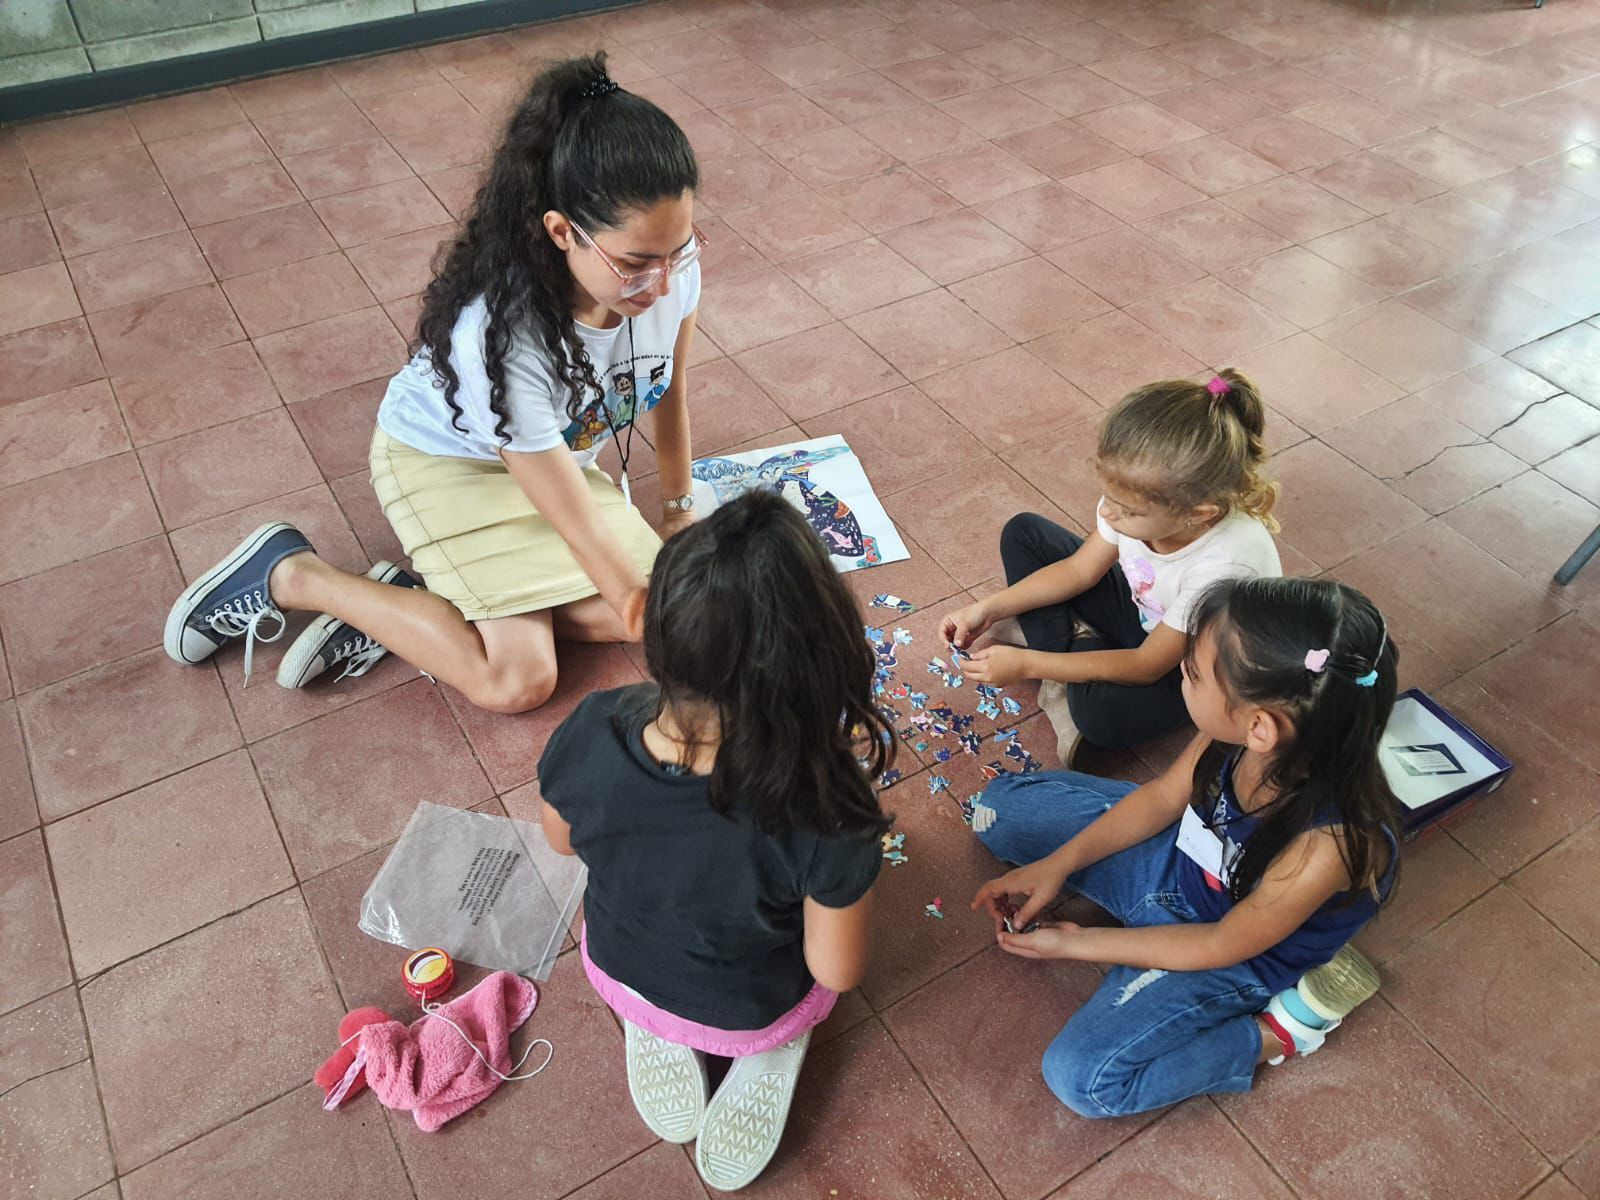 Una joven estudiante de TCU juega con niños en el piso